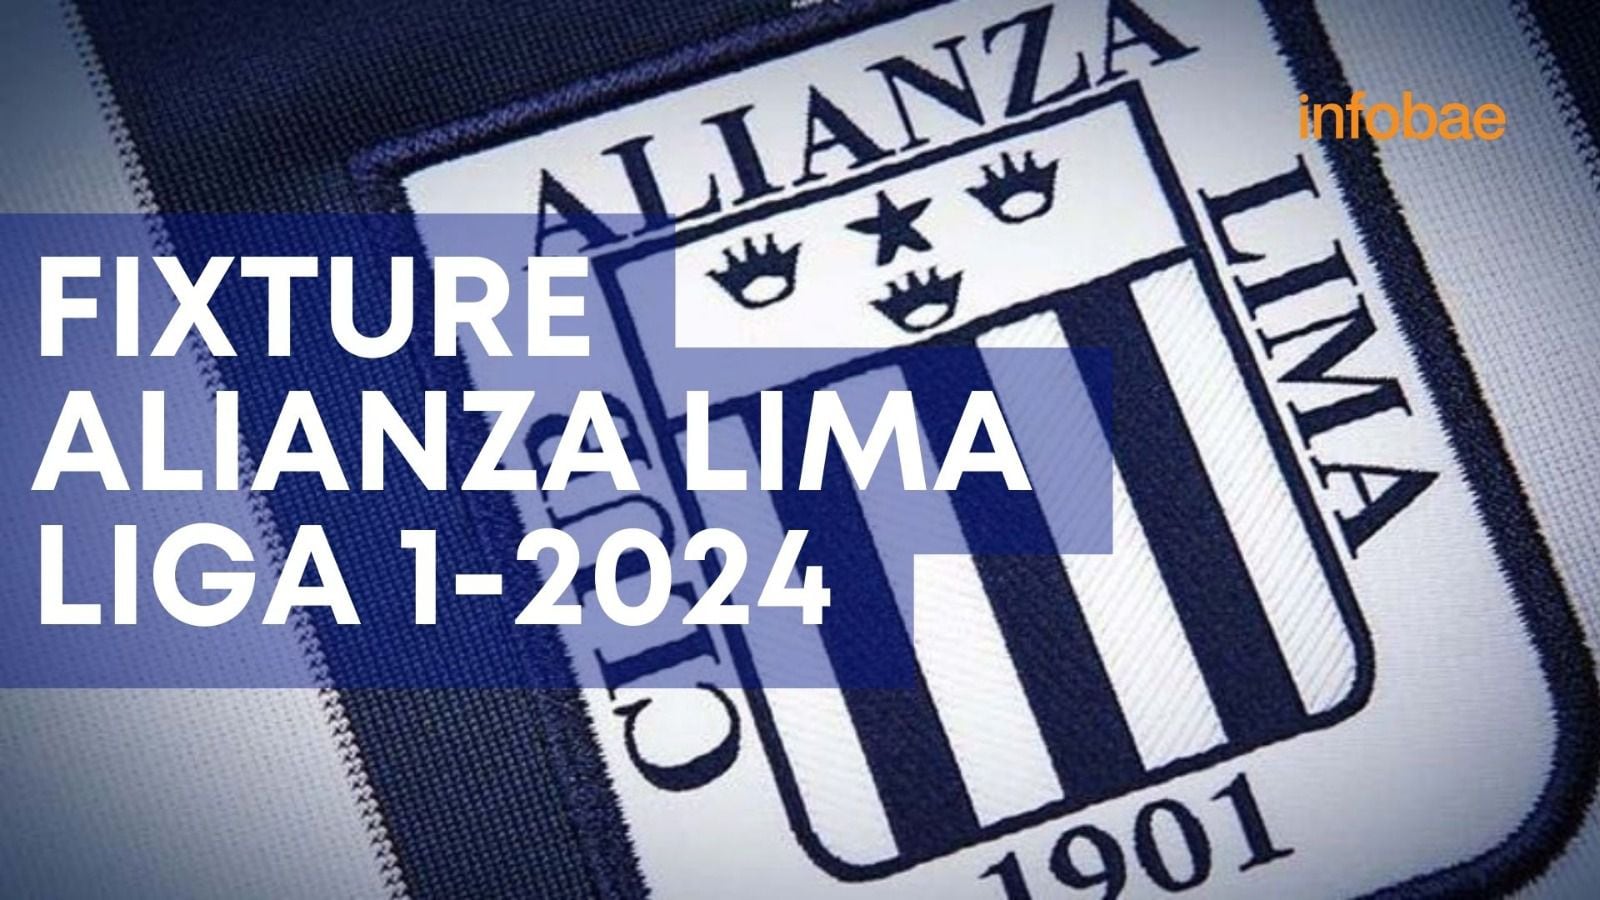 Fixture de Alianza Lima en la Liga 1 2024. Orden de los 34 partidos del equipo 'blanquiazul'.